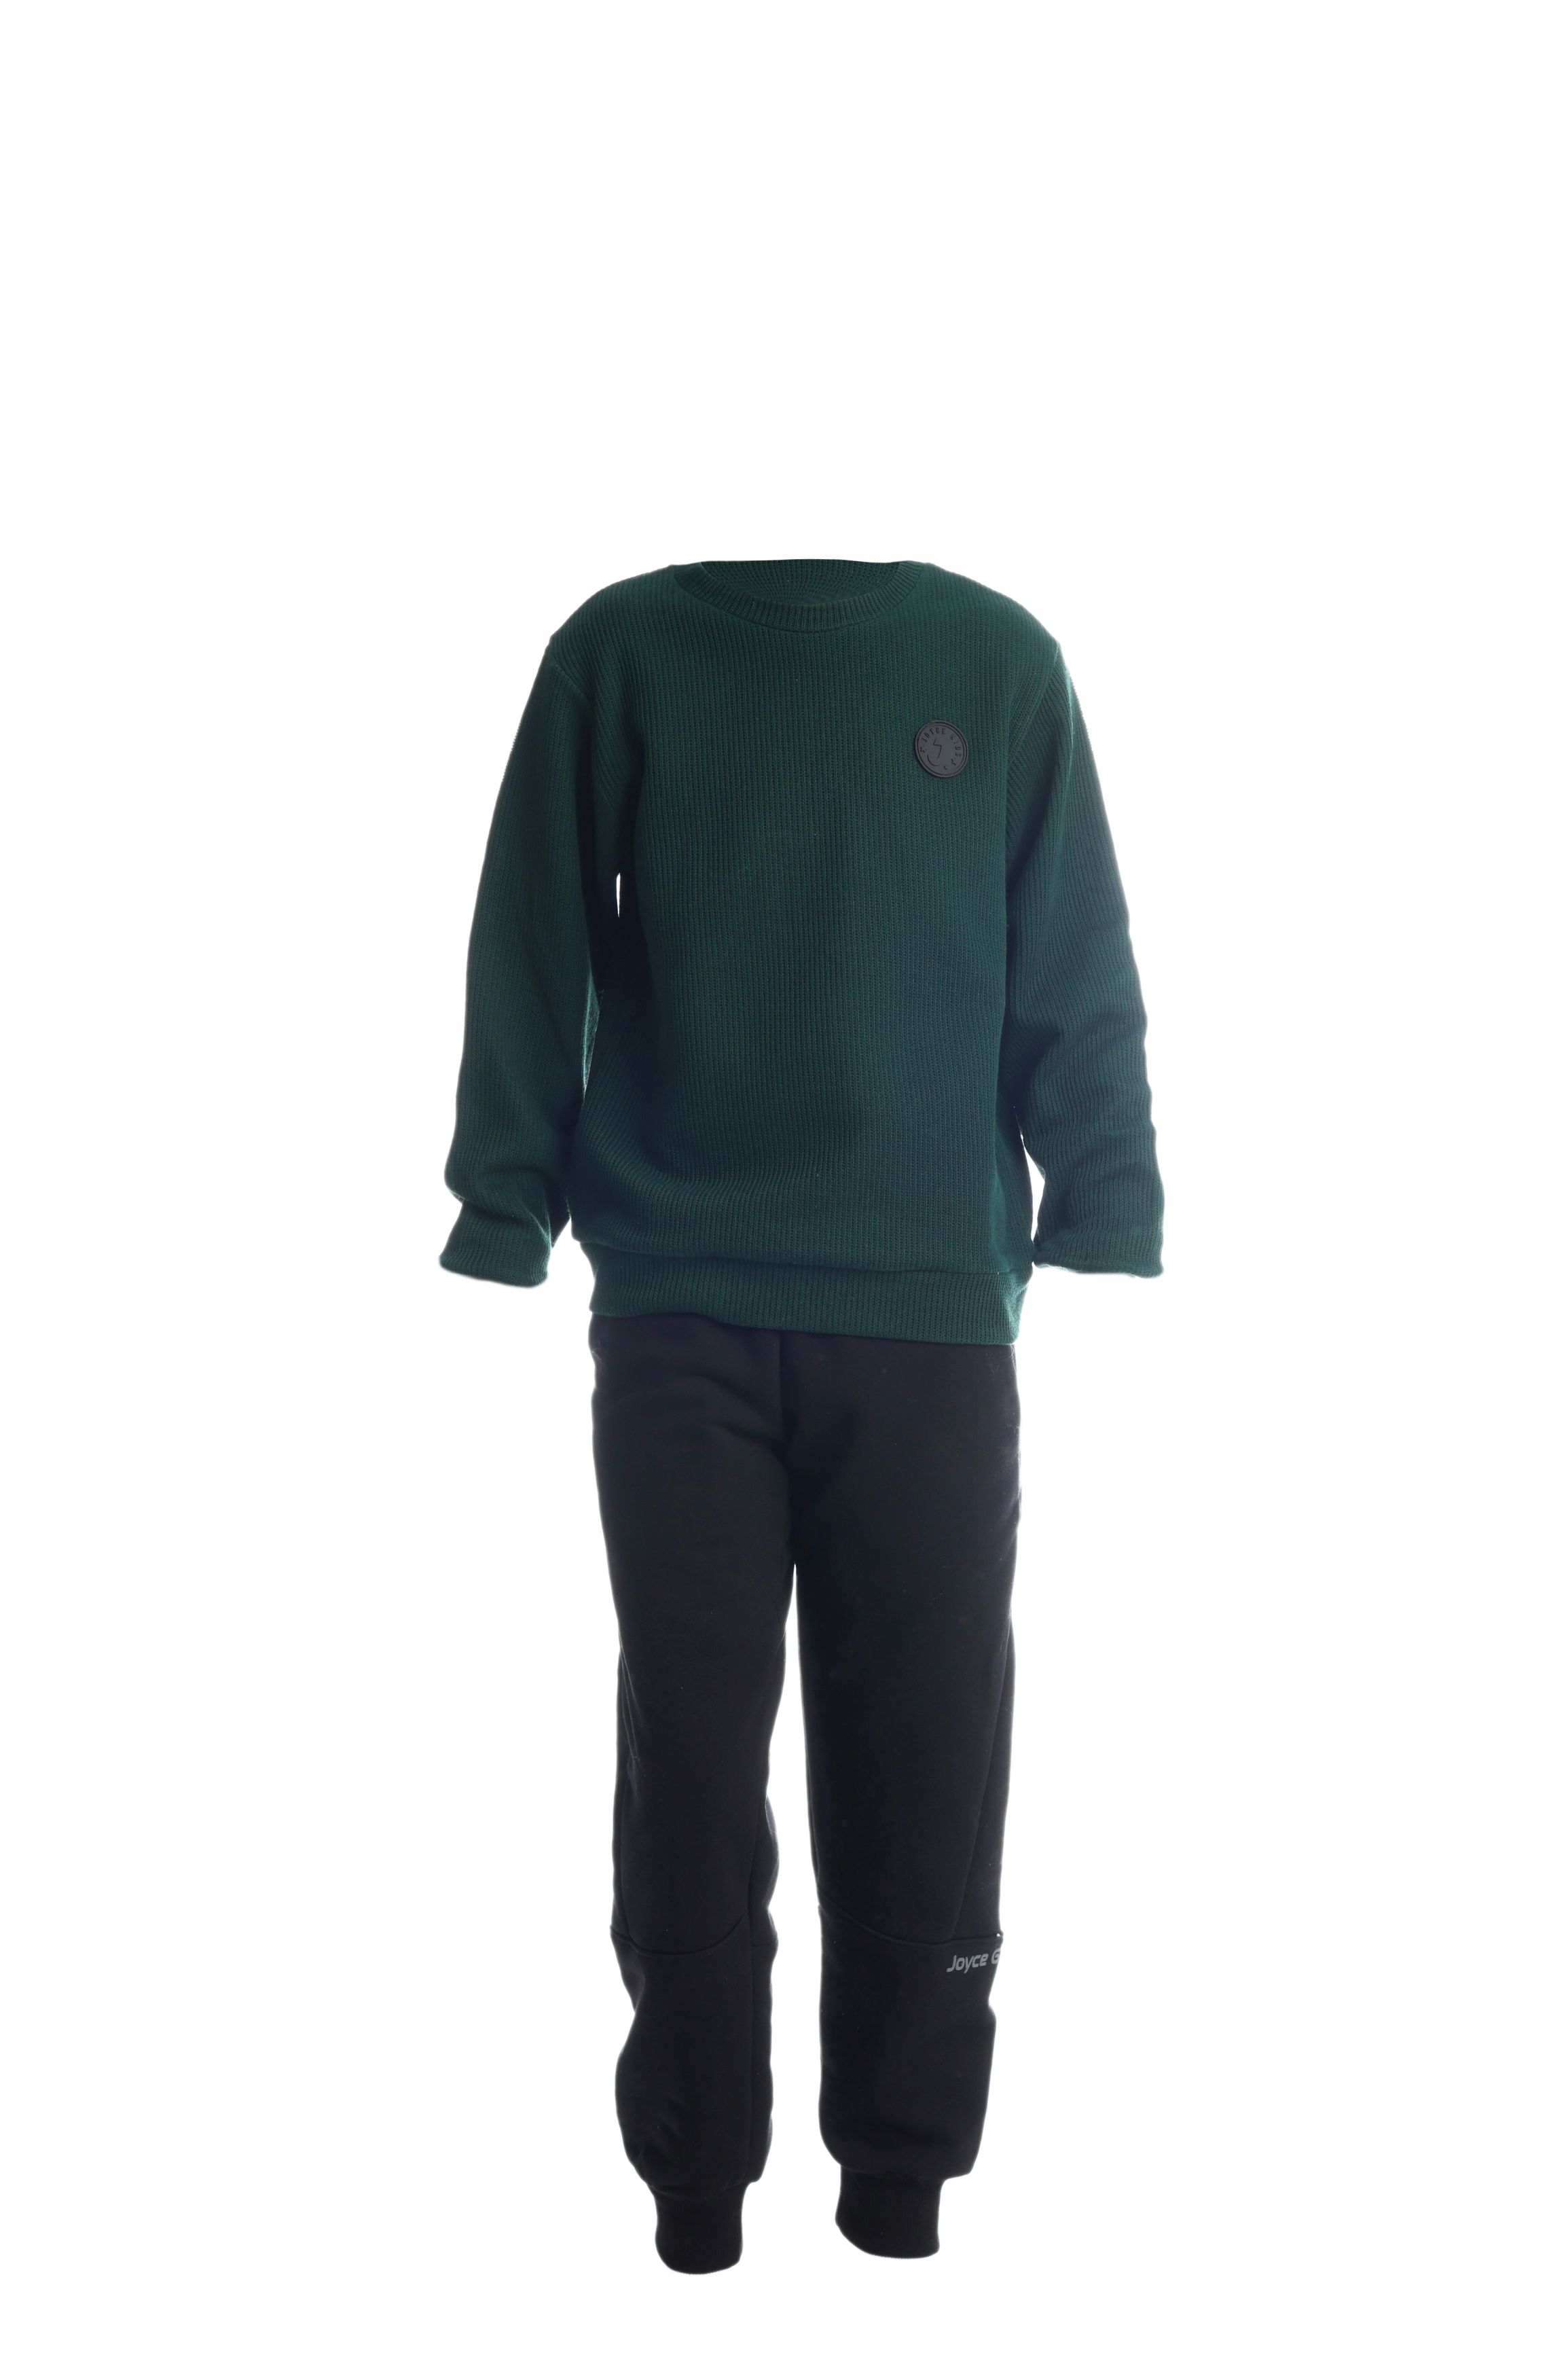 Chlapecké bavlněné tričko/svetr "TAB"/Zelená, vínová Barva: Zelená, Velikost: Vel. 12 (144/150 cm)